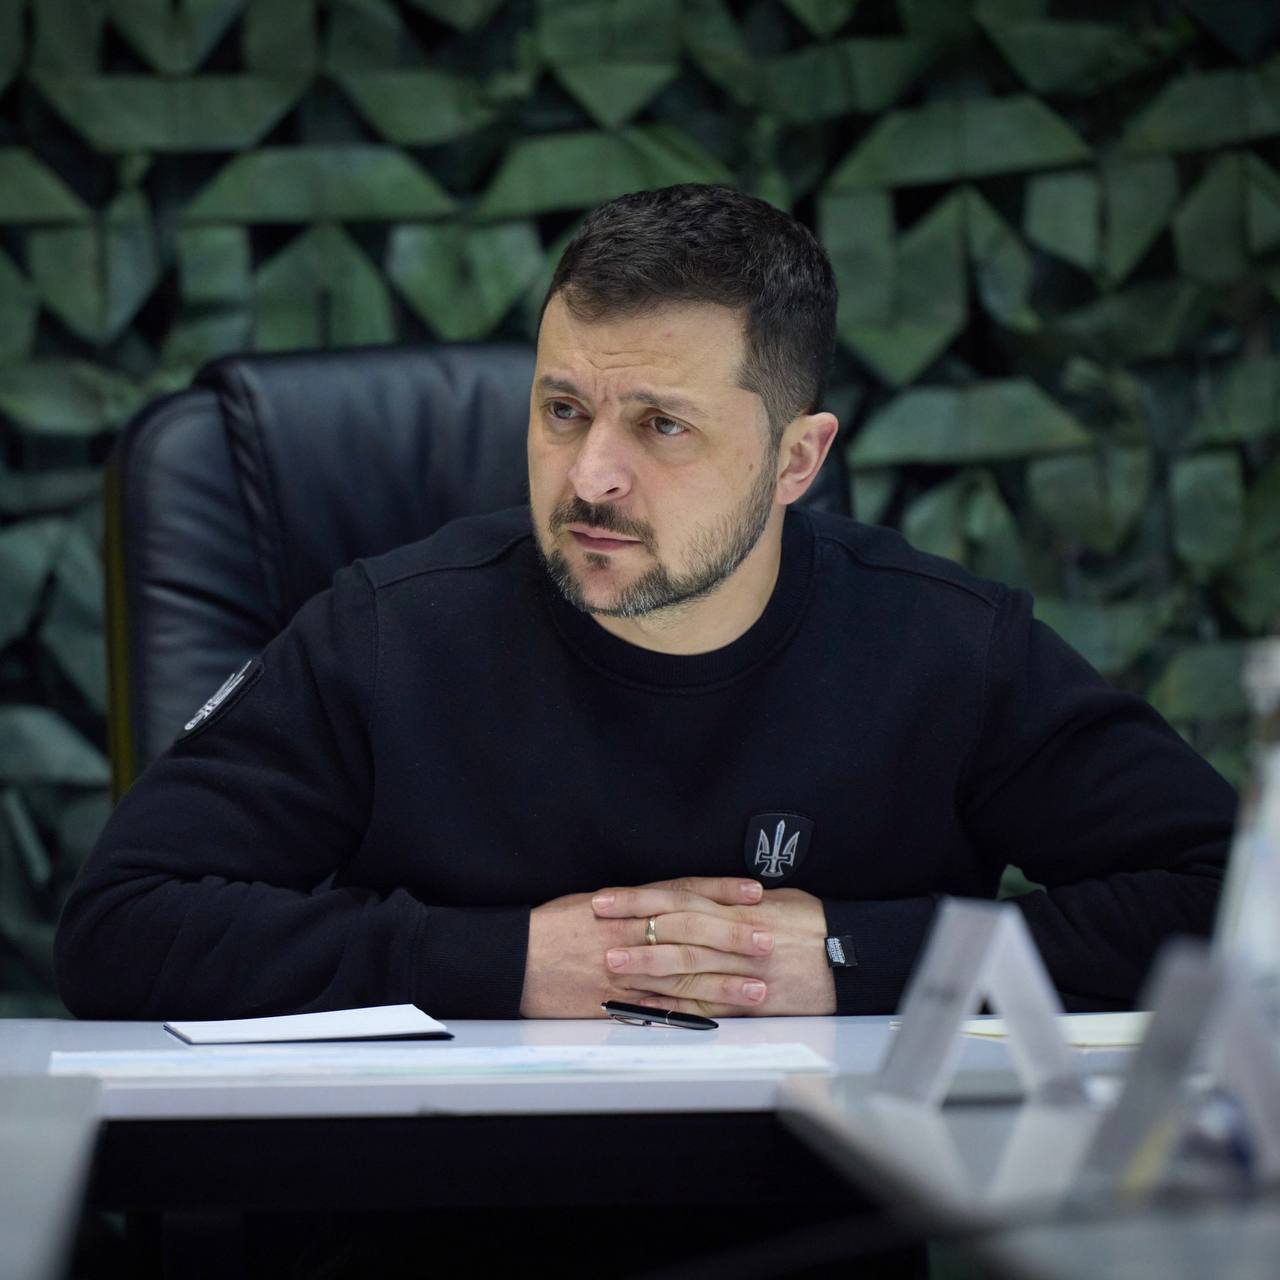 "Україна буде сильнішою": Зеленський анонсував потужні заходи для посилення держави цього місяця